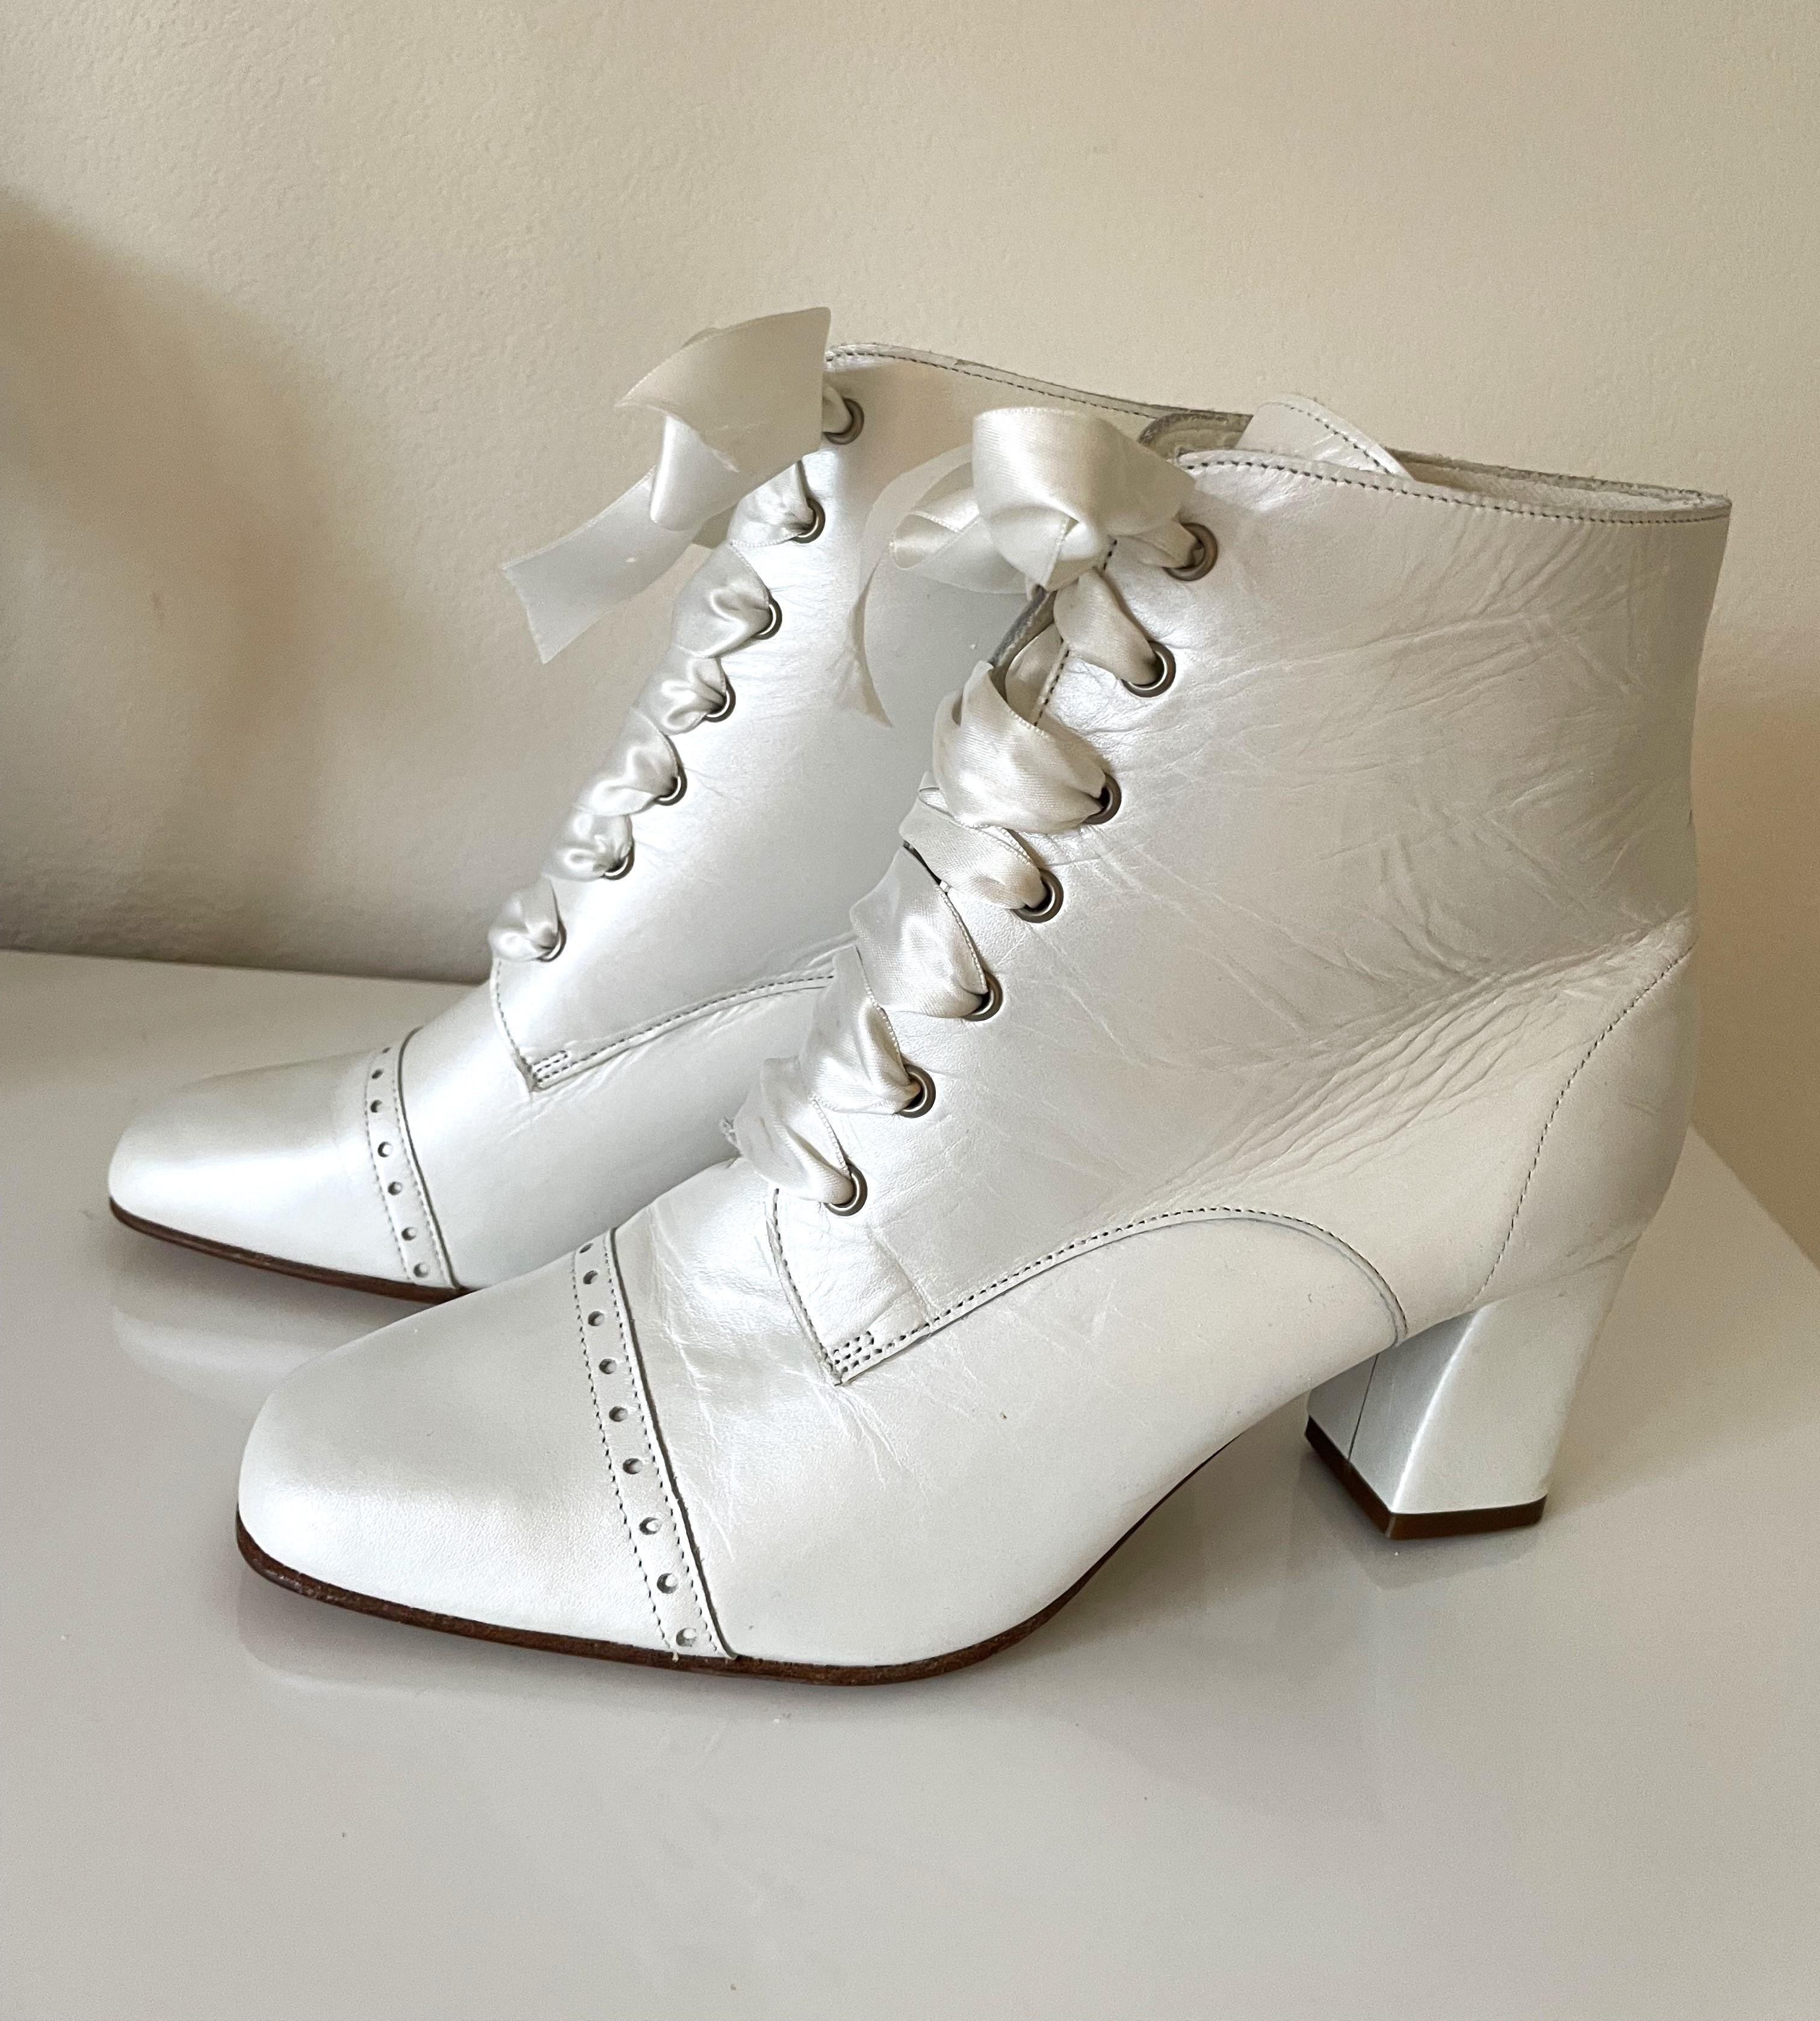 Très rare vintage bottes de mariée chaussures de Courman une boutique de mariée renommée à Paris des années 1980 à l'époque situé au Palais des Congrès. Si vous les aimez, vous les aimez ! 
